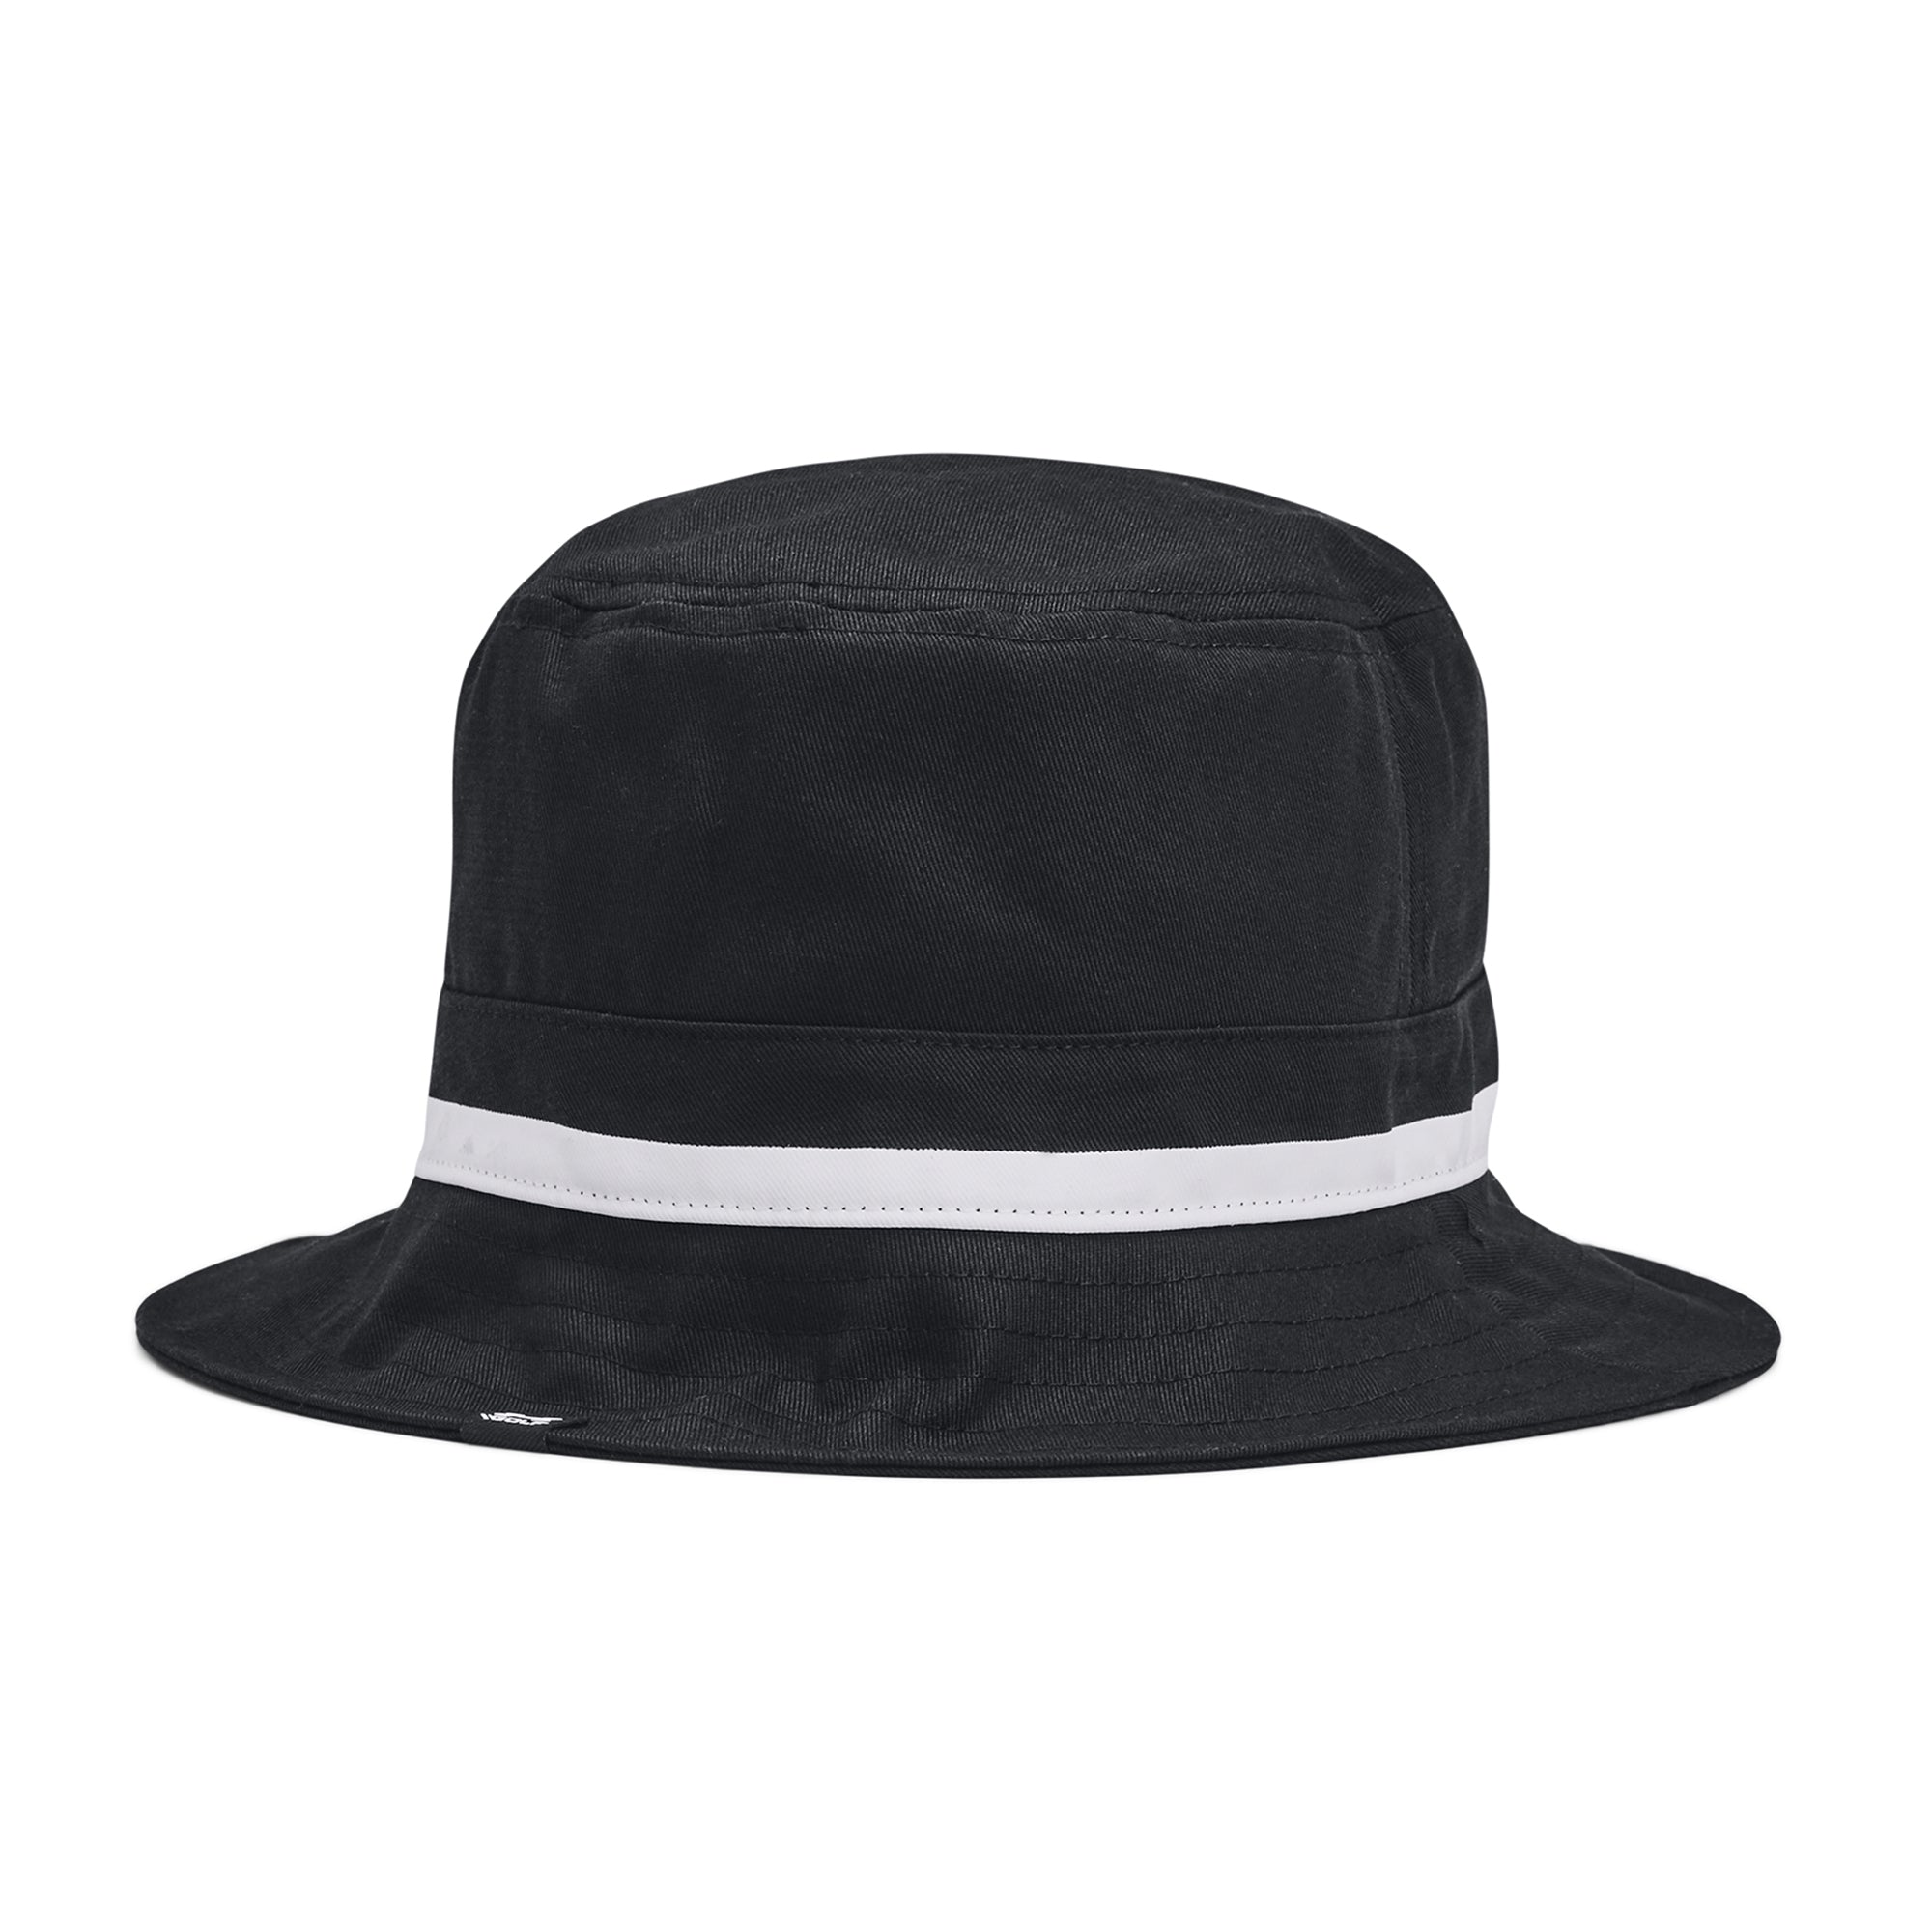 Under Armour Golf Driver Bucket Hat 1383483 Black 001